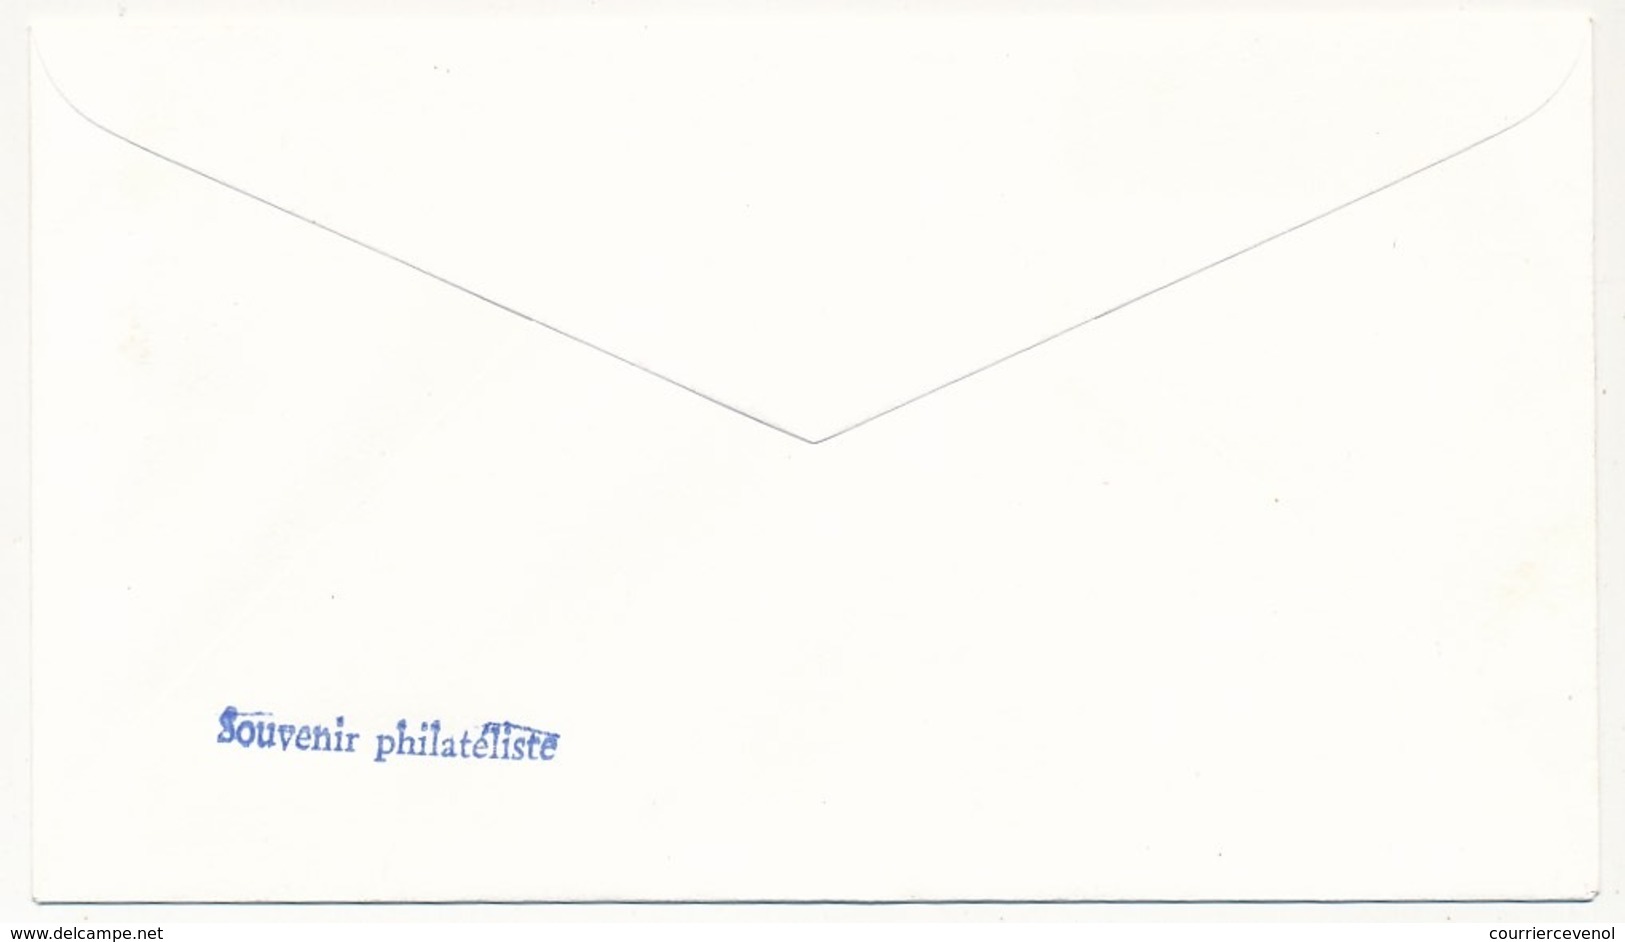 FRANCE - Enveloppe Philatélique "Timbres De La Libération - 5eme Exposition Nationale" Lyon 1977 - Affr 4F Libération - 2. Weltkrieg